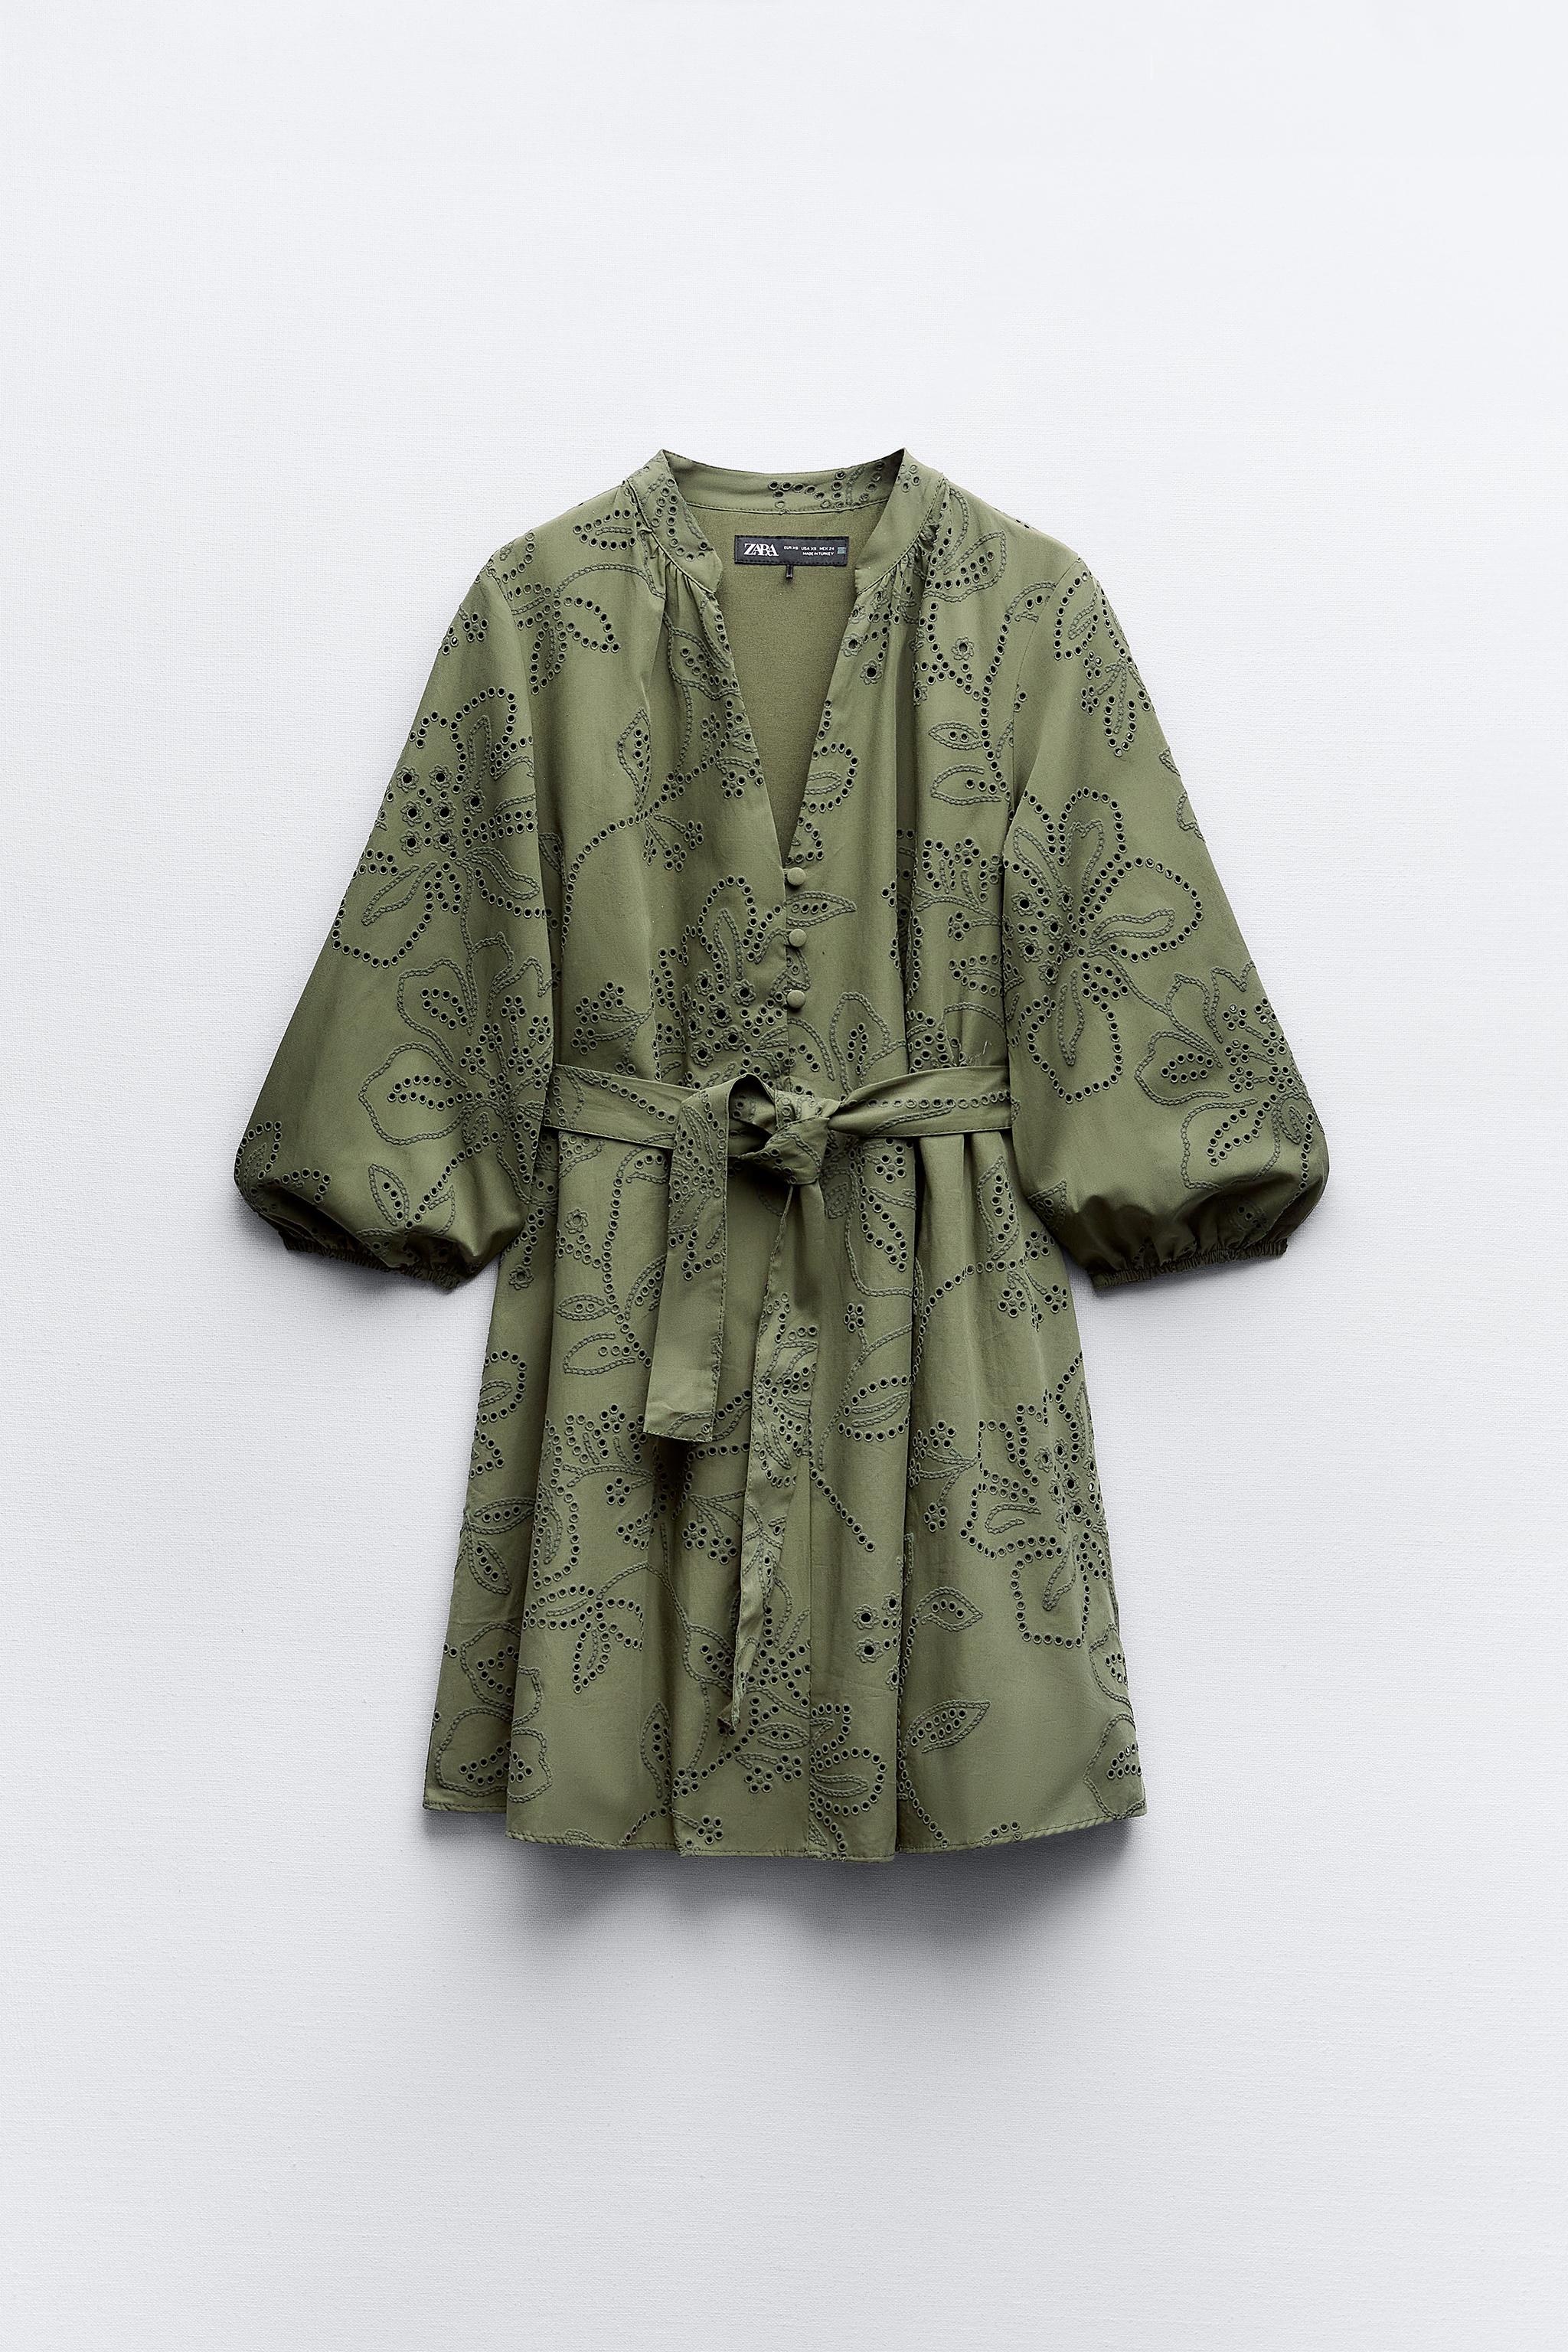 El vestido ibicenco básico de Zara con manguitas y bordados que las  influencers elevan con alpargatas